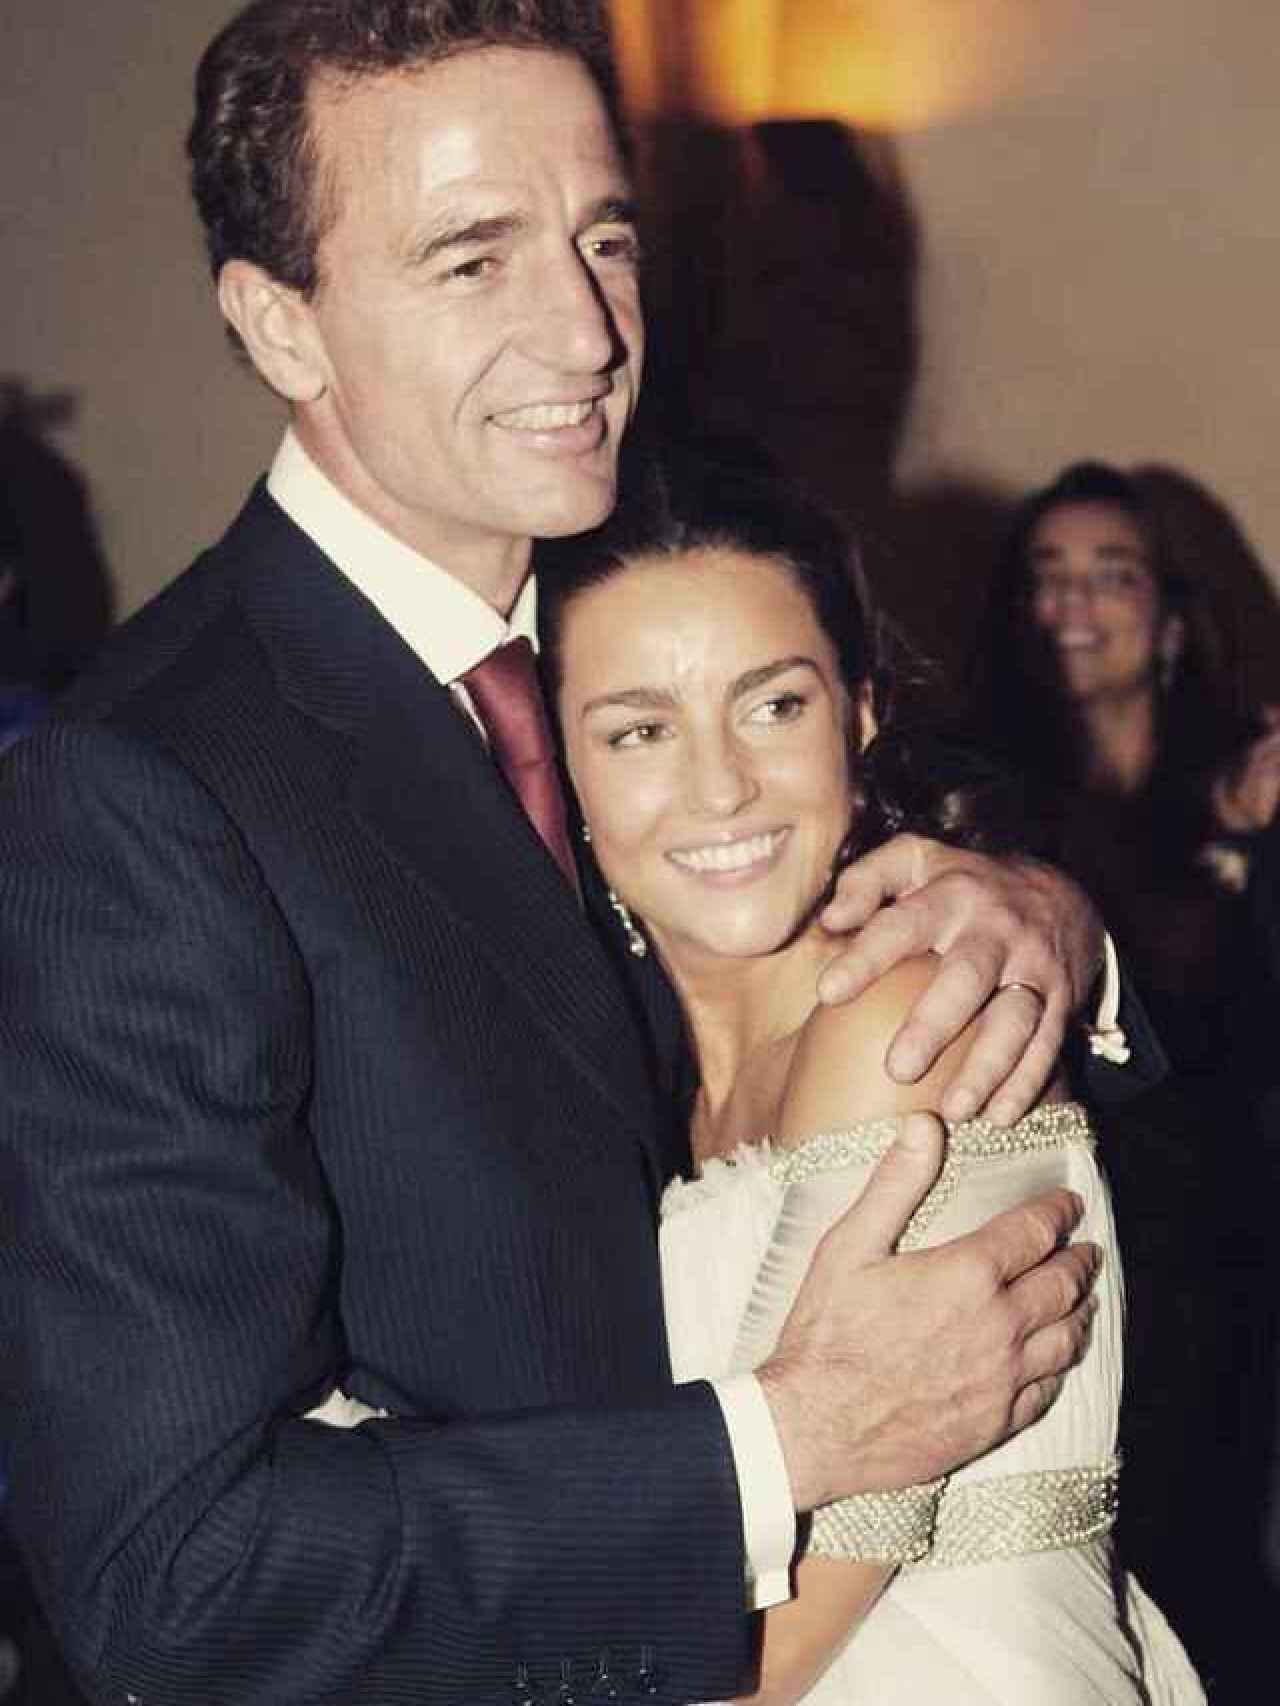 Alessandro Lequio y María Palacios el día de su boda.